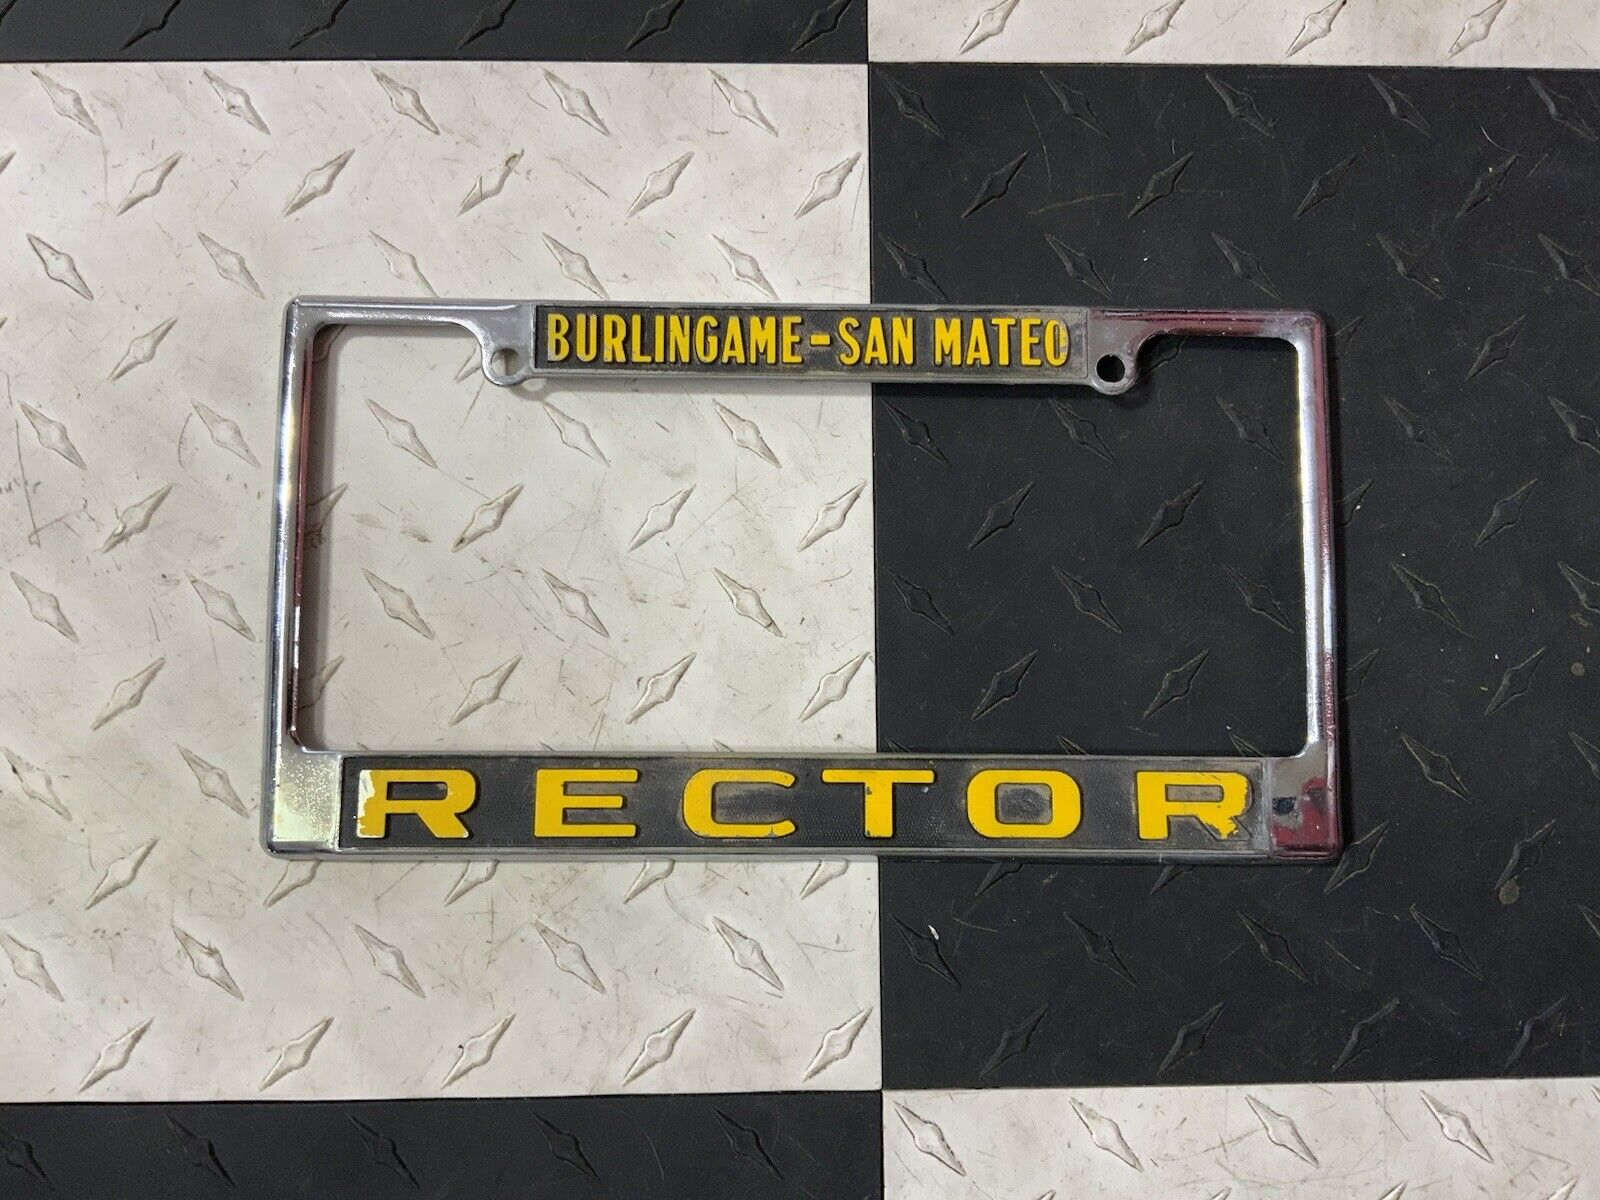 Vintage Rector Burlingame San Mateo Porsche Dealer License Plate Frame Barn Find